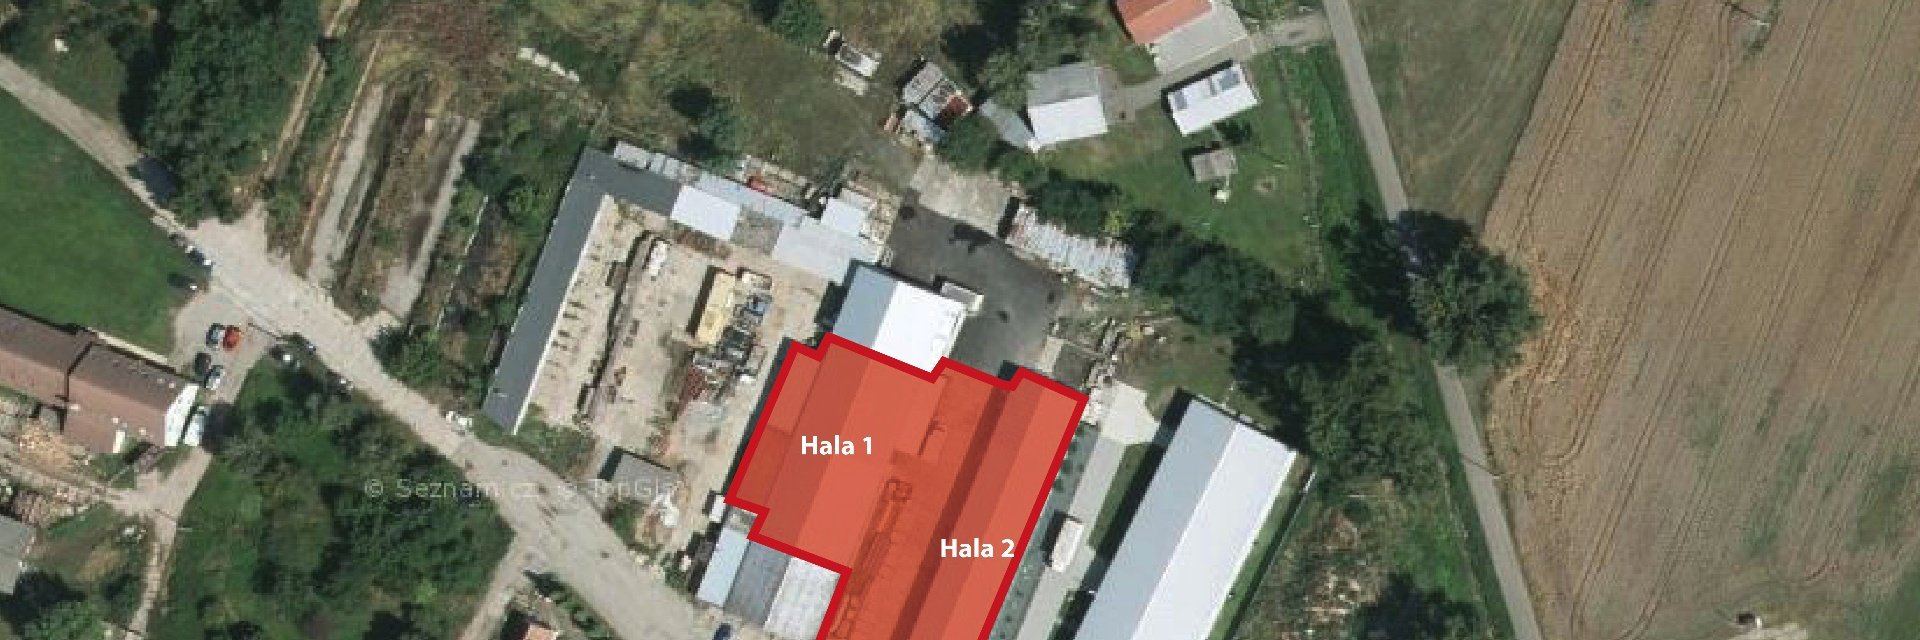 Pronájem výrobně/skladové haly cca 977 m², nedaleko dálnice D2